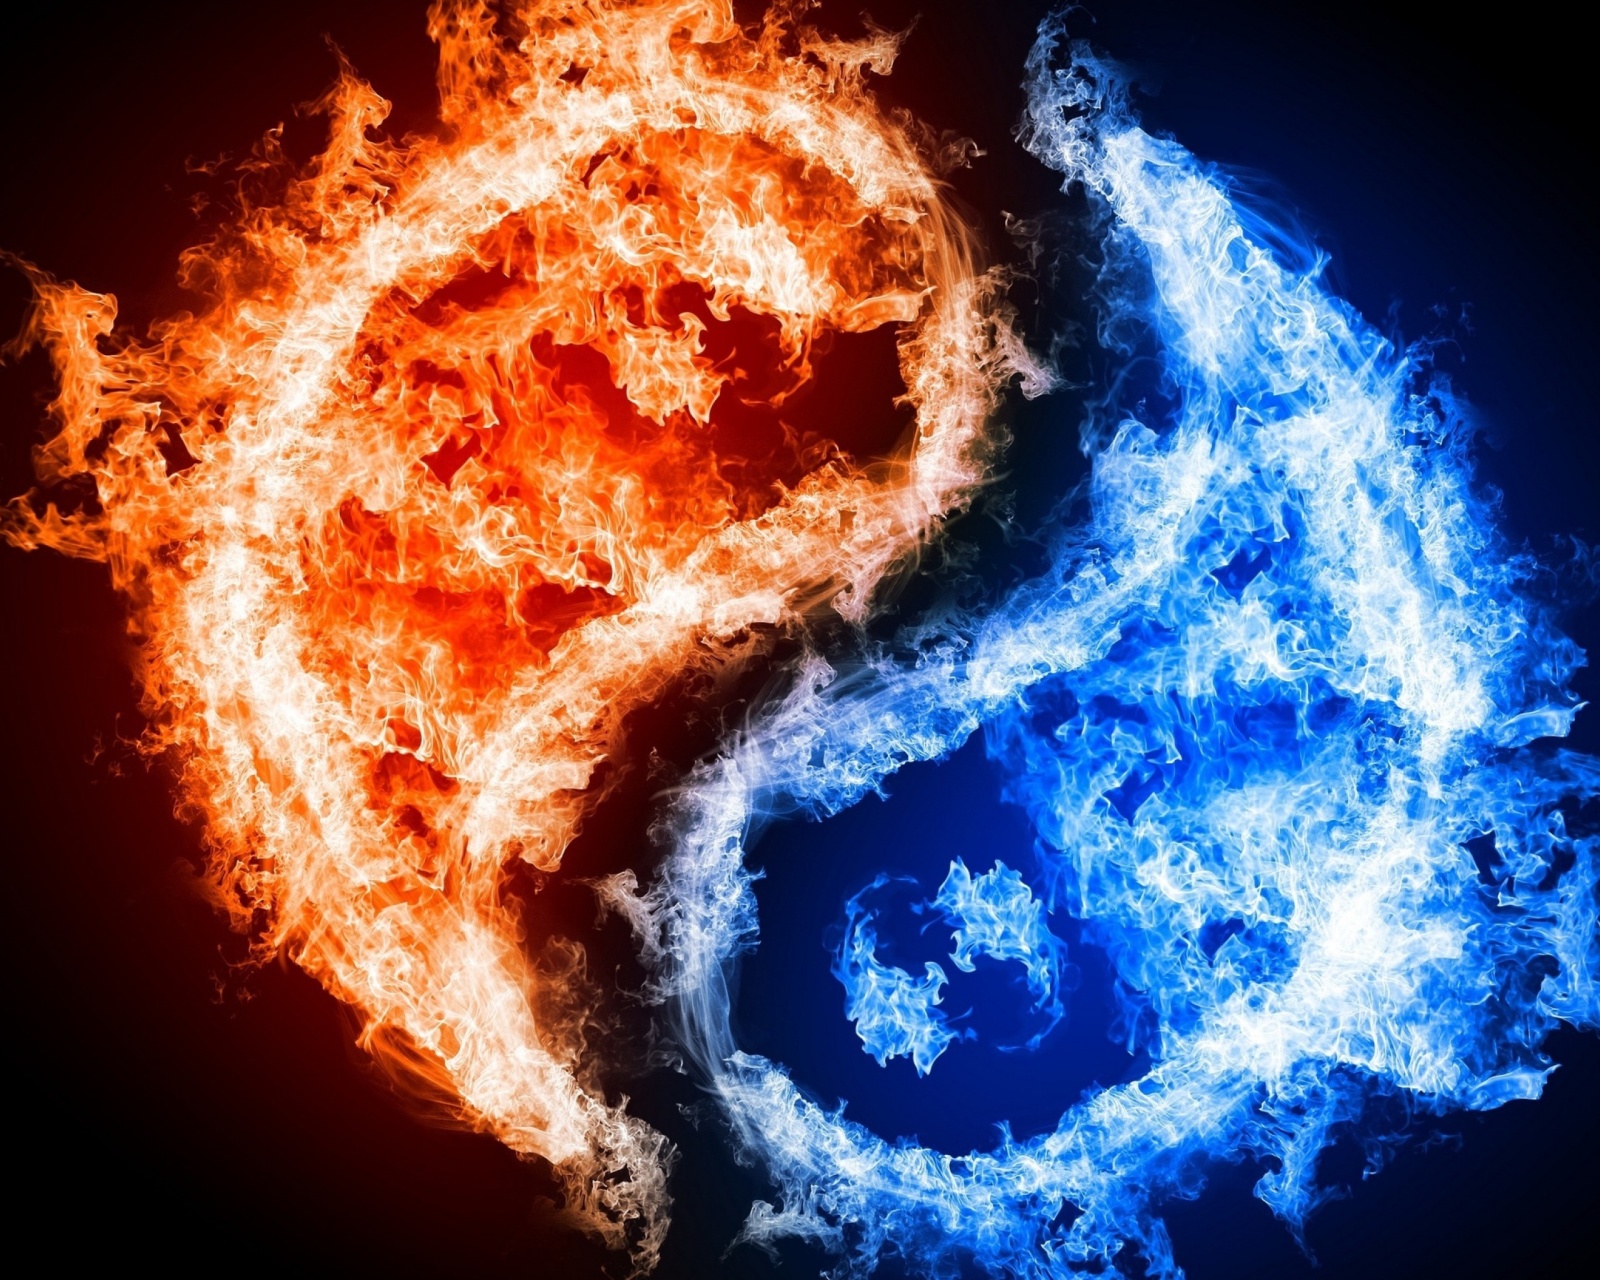 Yin and yang, fire and water screenshot #1 1600x1280